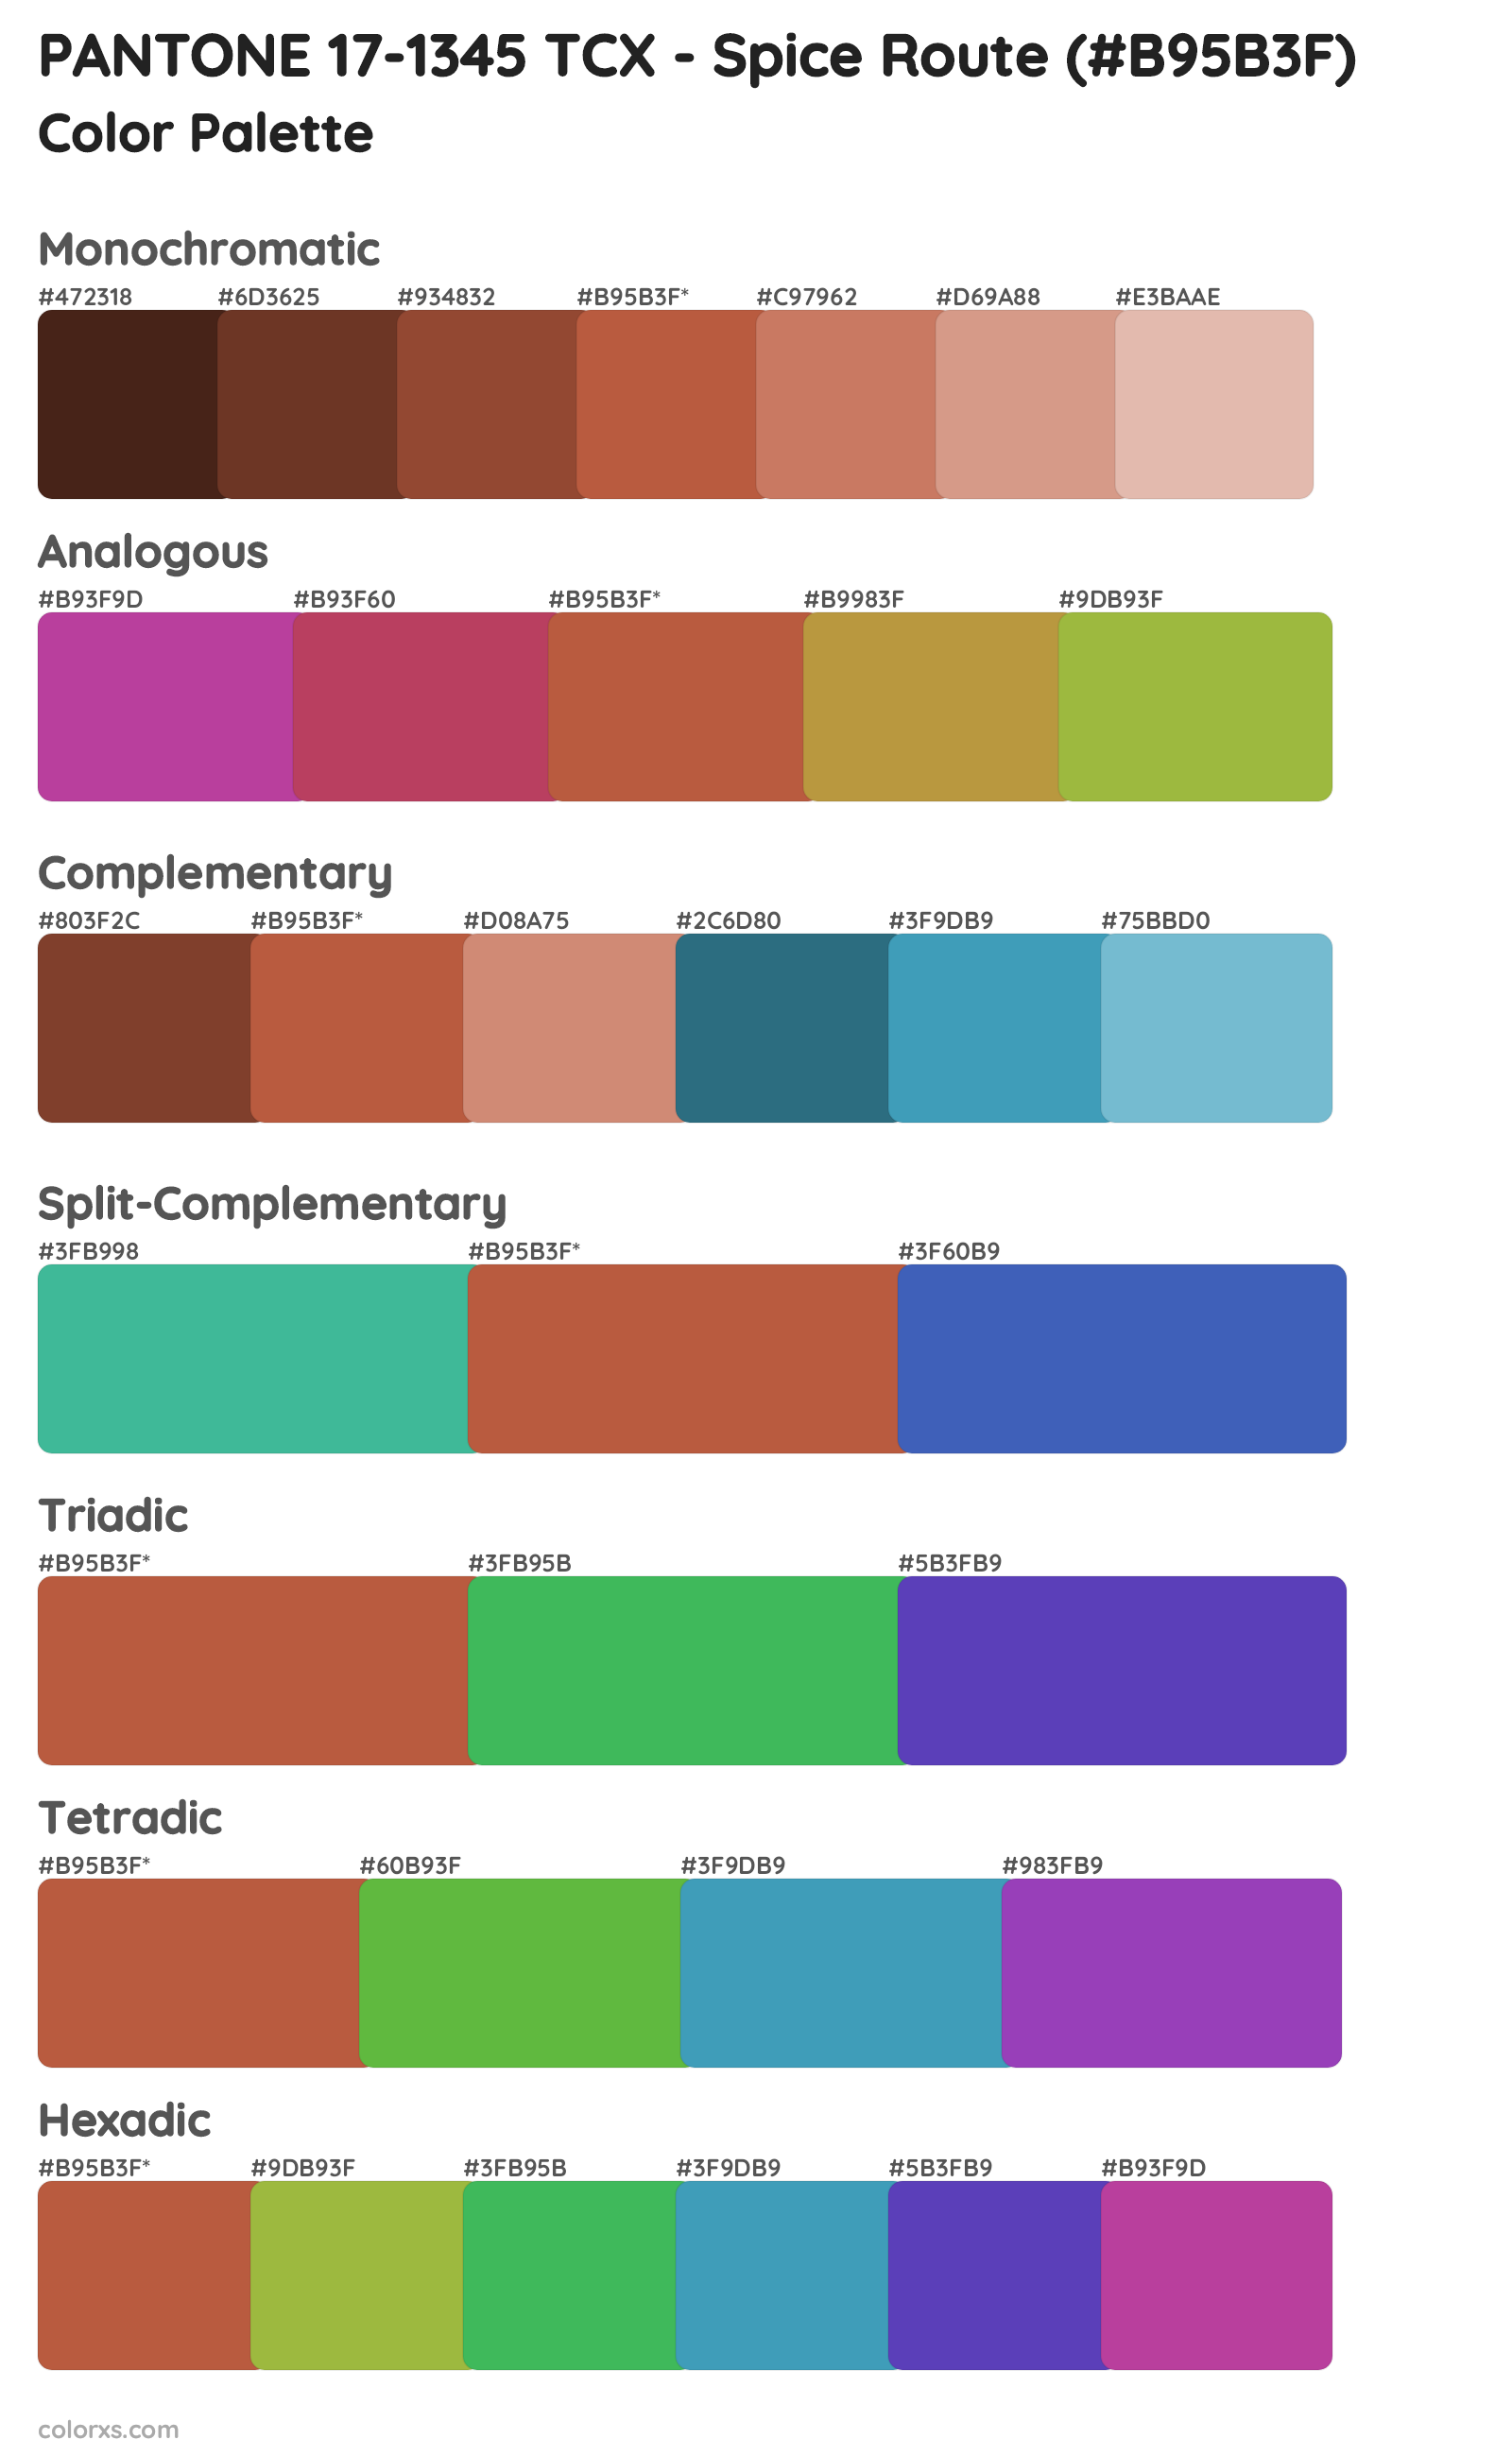 PANTONE 17-1345 TCX - Spice Route Color Scheme Palettes